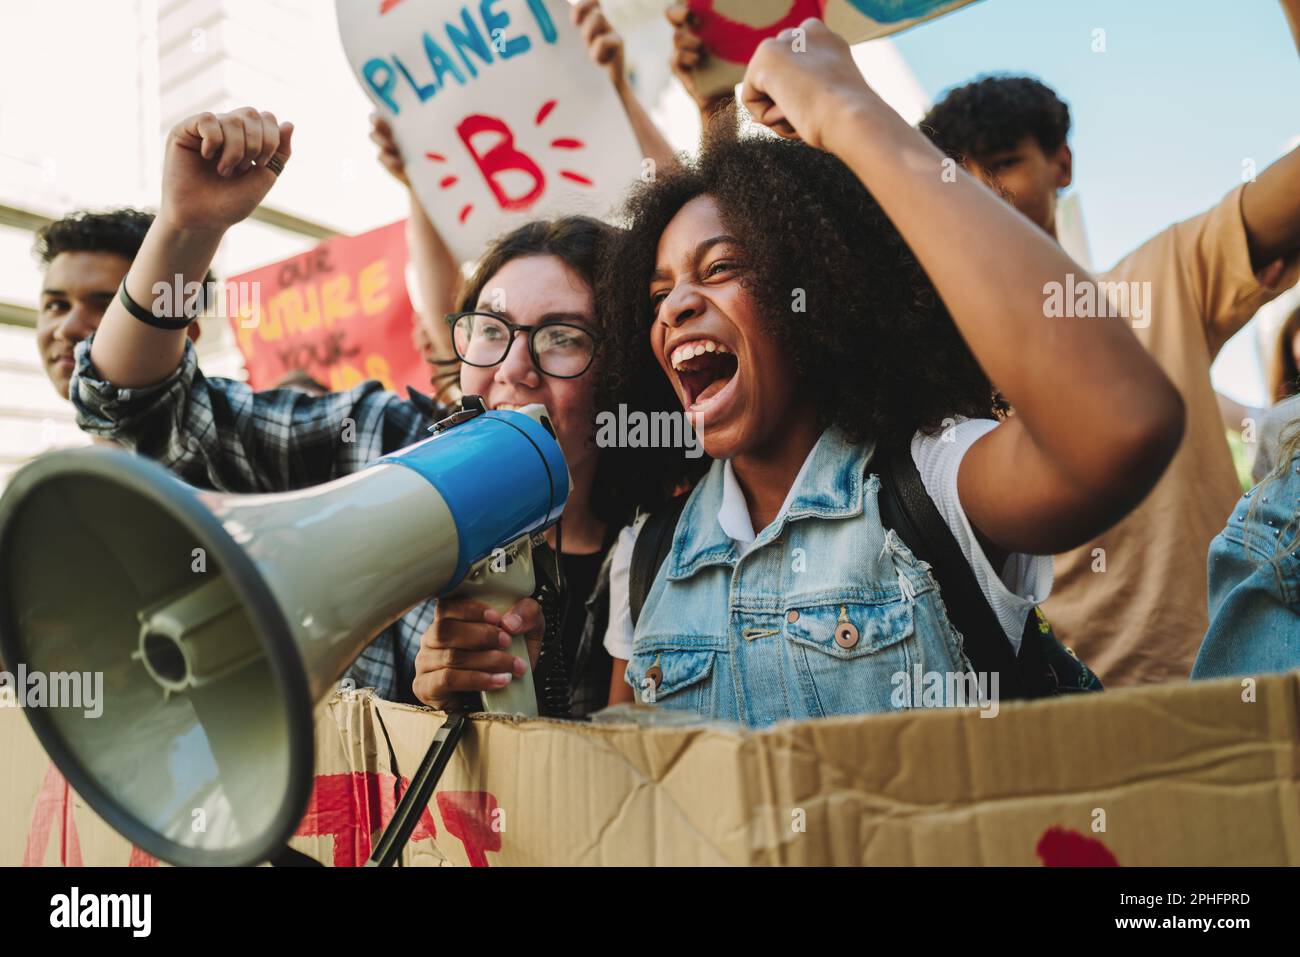 Jugendliche Klimaschutzaktivisten schreien auf ein Megafon, während sie gegen den Klimawandel marschieren. Junge Menschen protestieren gegen globale Erwärmung und Umweltverschmutzung. T Stockfoto